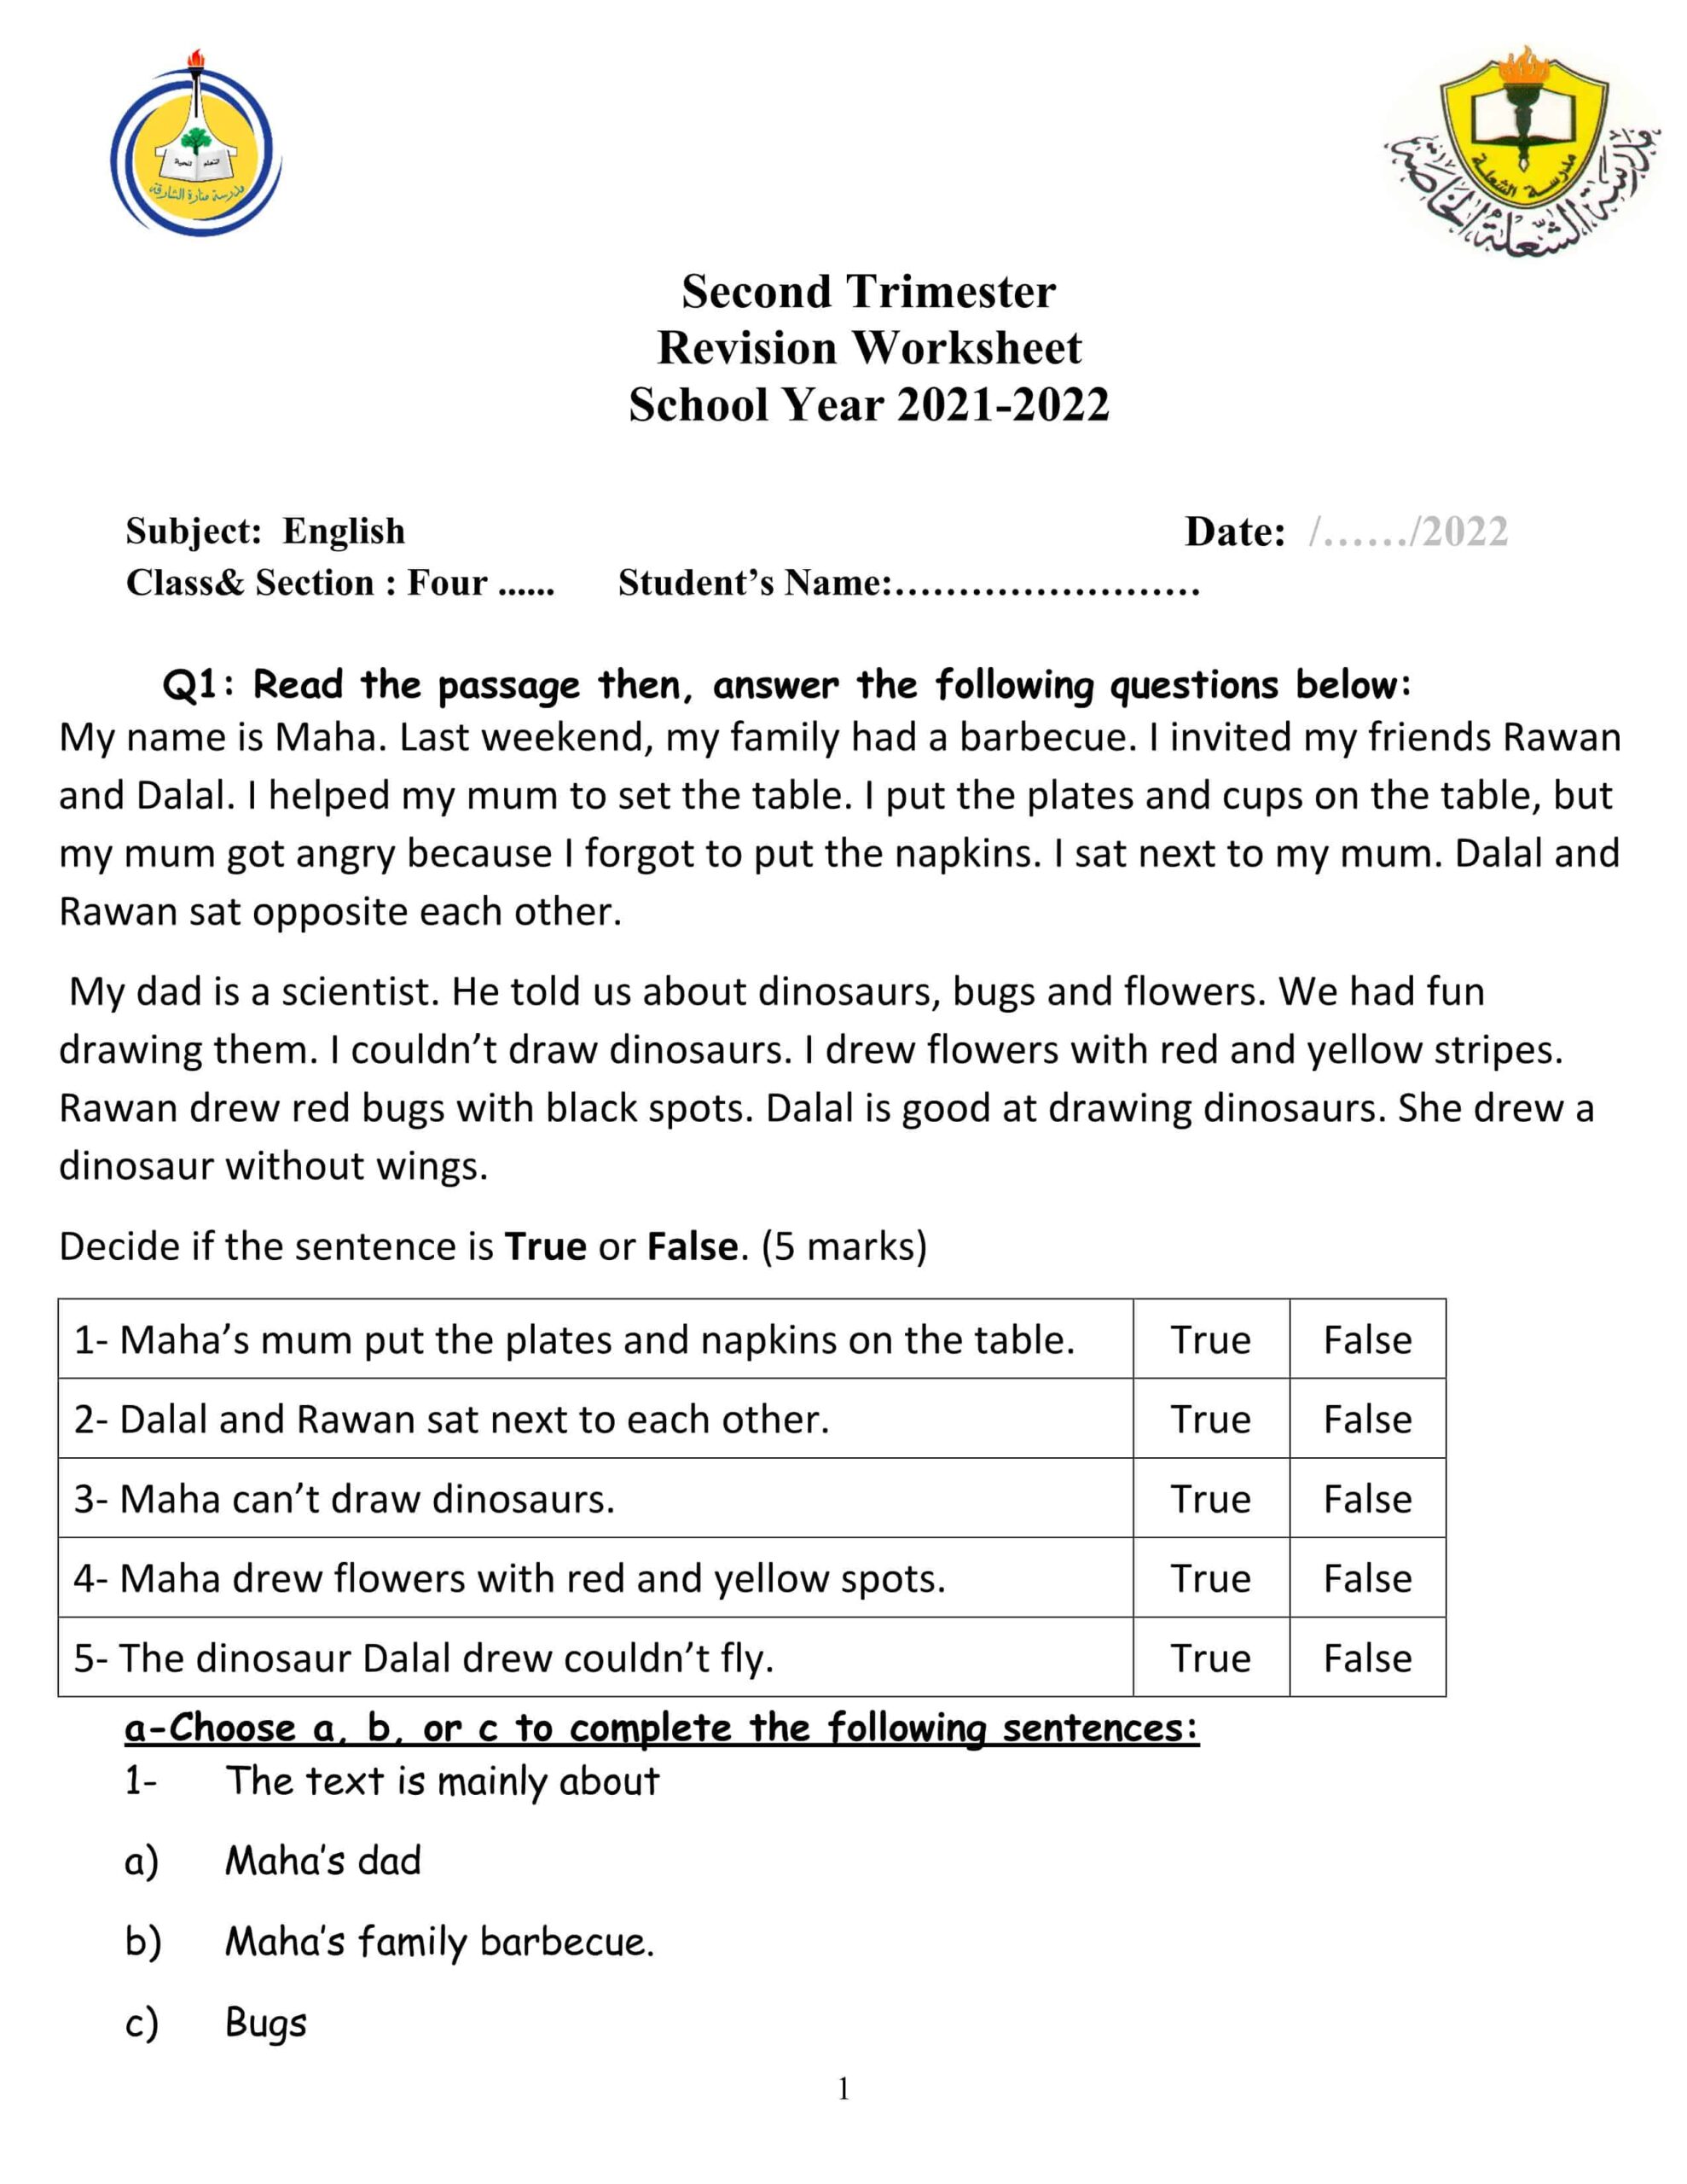 Revision Worksheet الوحدة السابعة والثامنة اللغة الإنجليزية الصف الرابع 